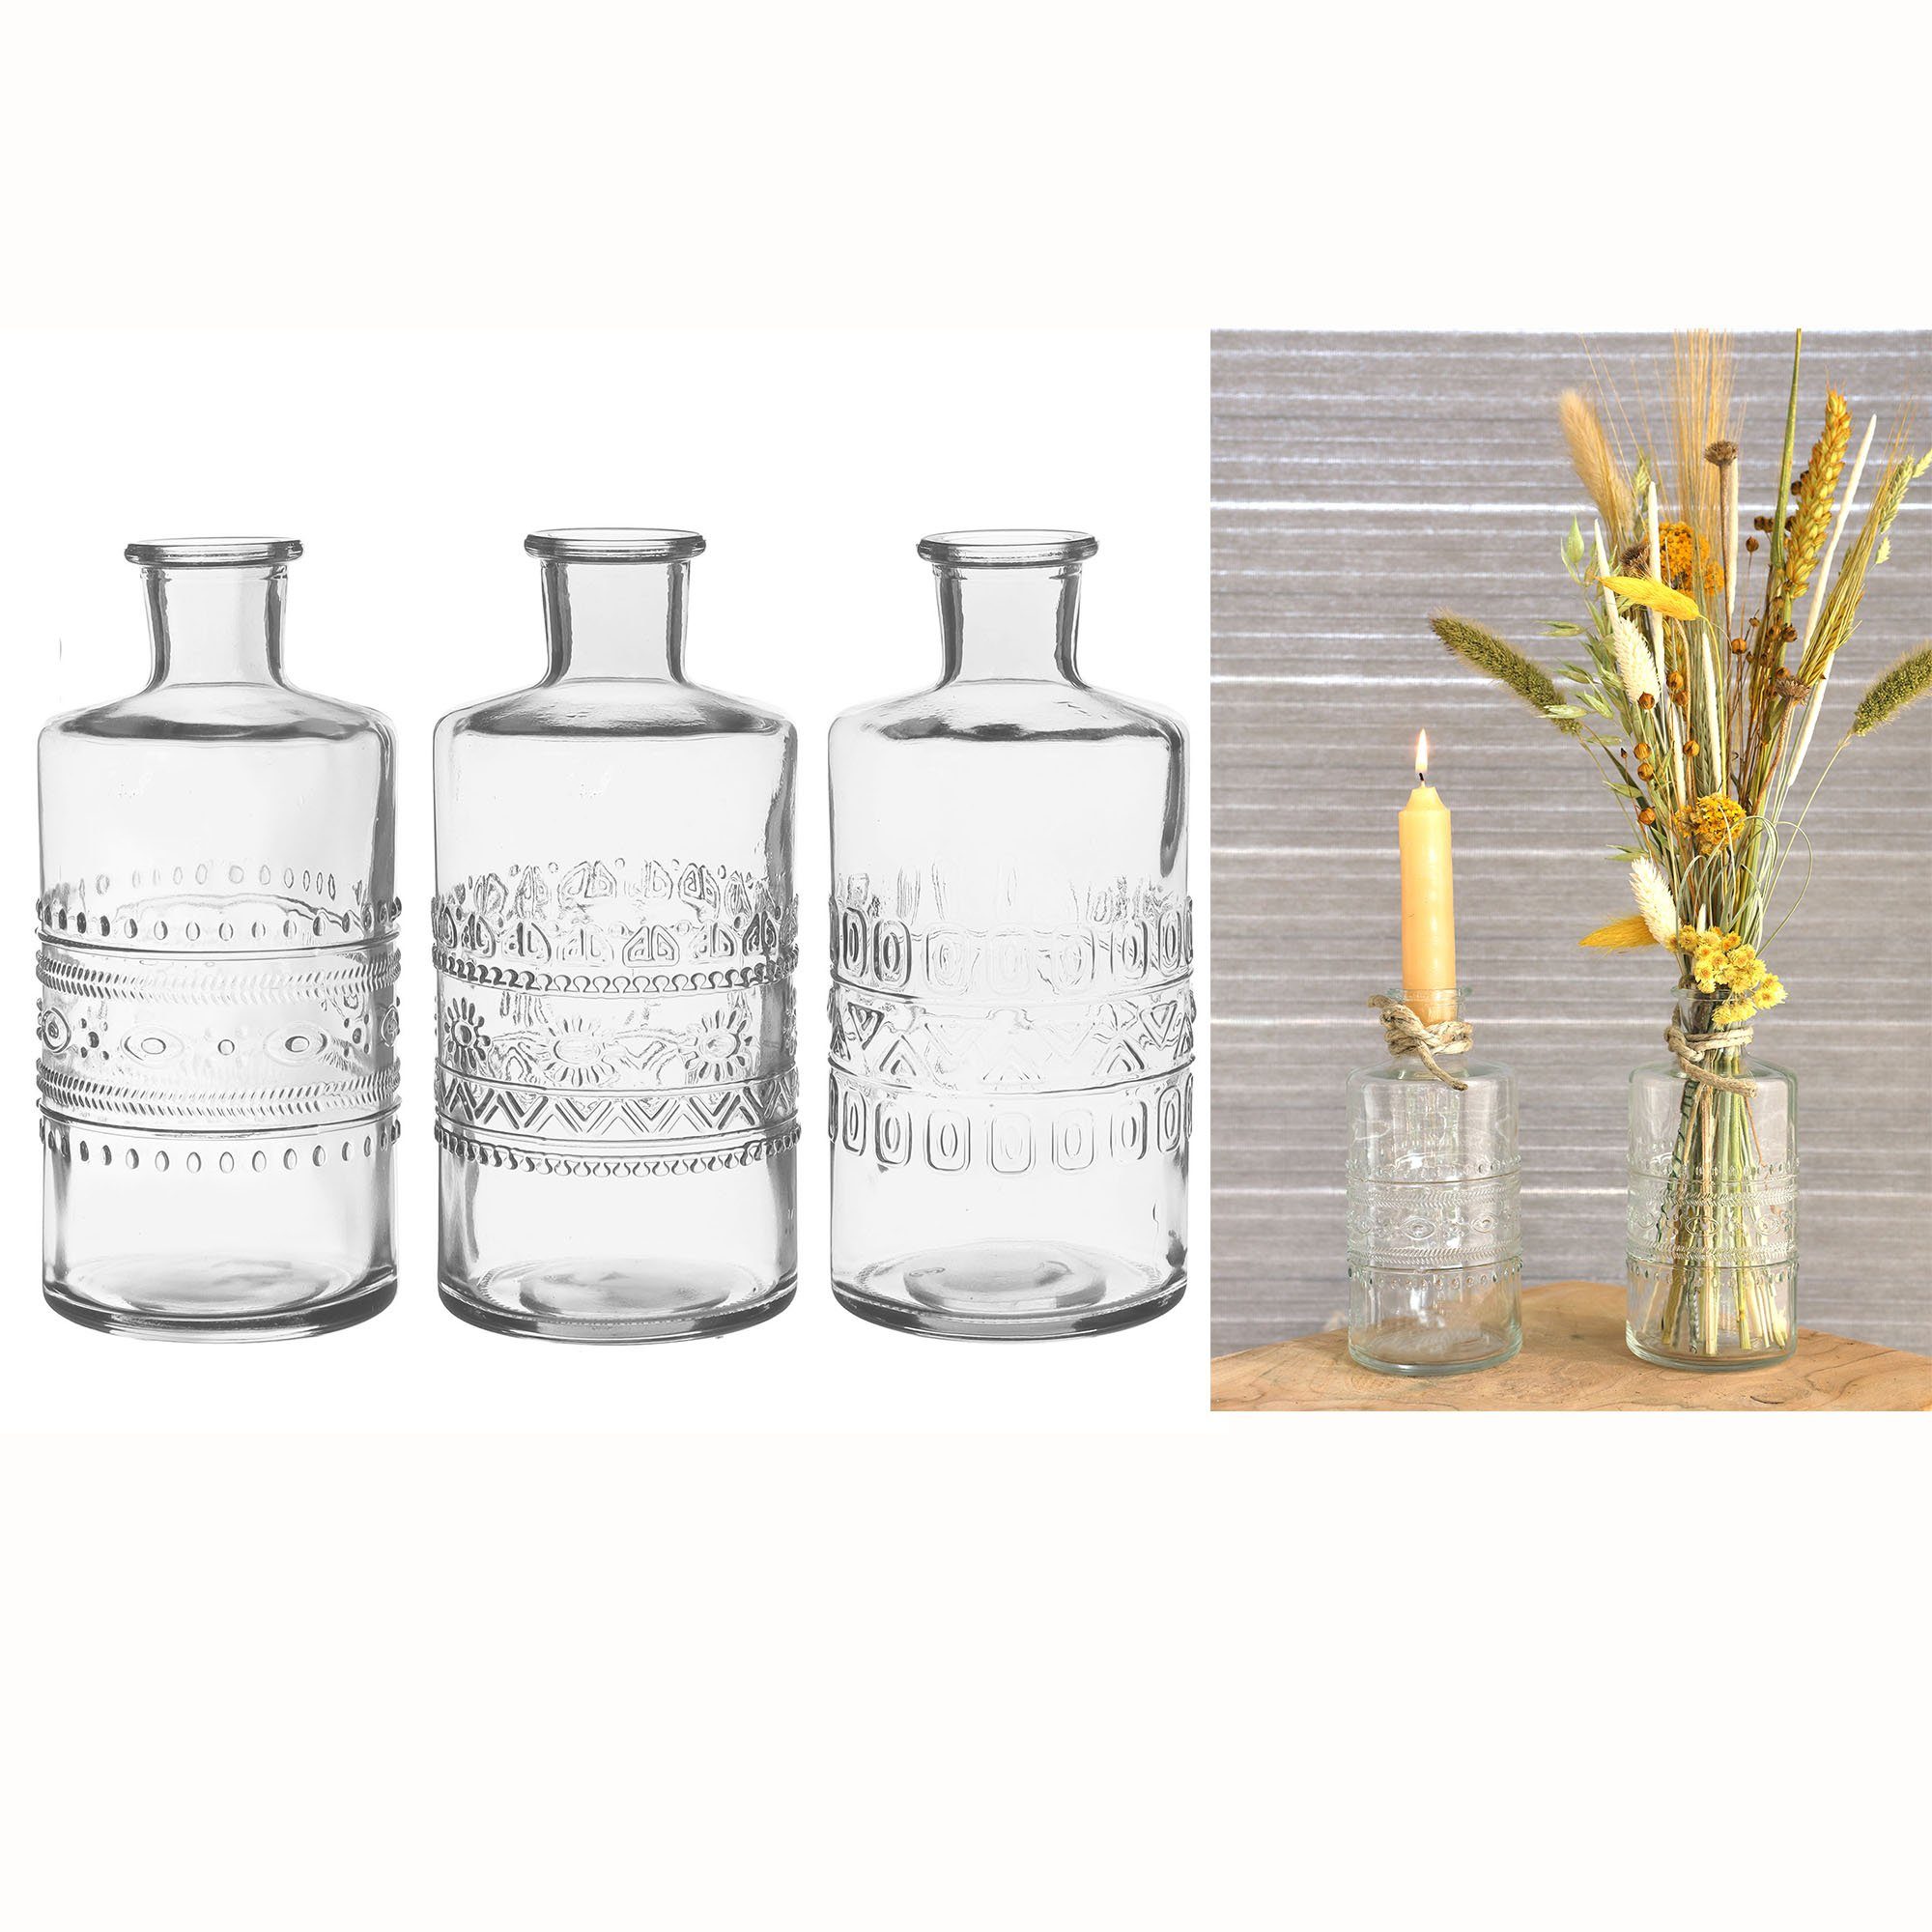 Annastore Dekovase 12 x Vasen / Glasflaschen / Korken oder Öllampe Tischvasen Blumenvase, Glasvase, Tischvase, Dekovase, Väschen, Tischdeko Hochzeit